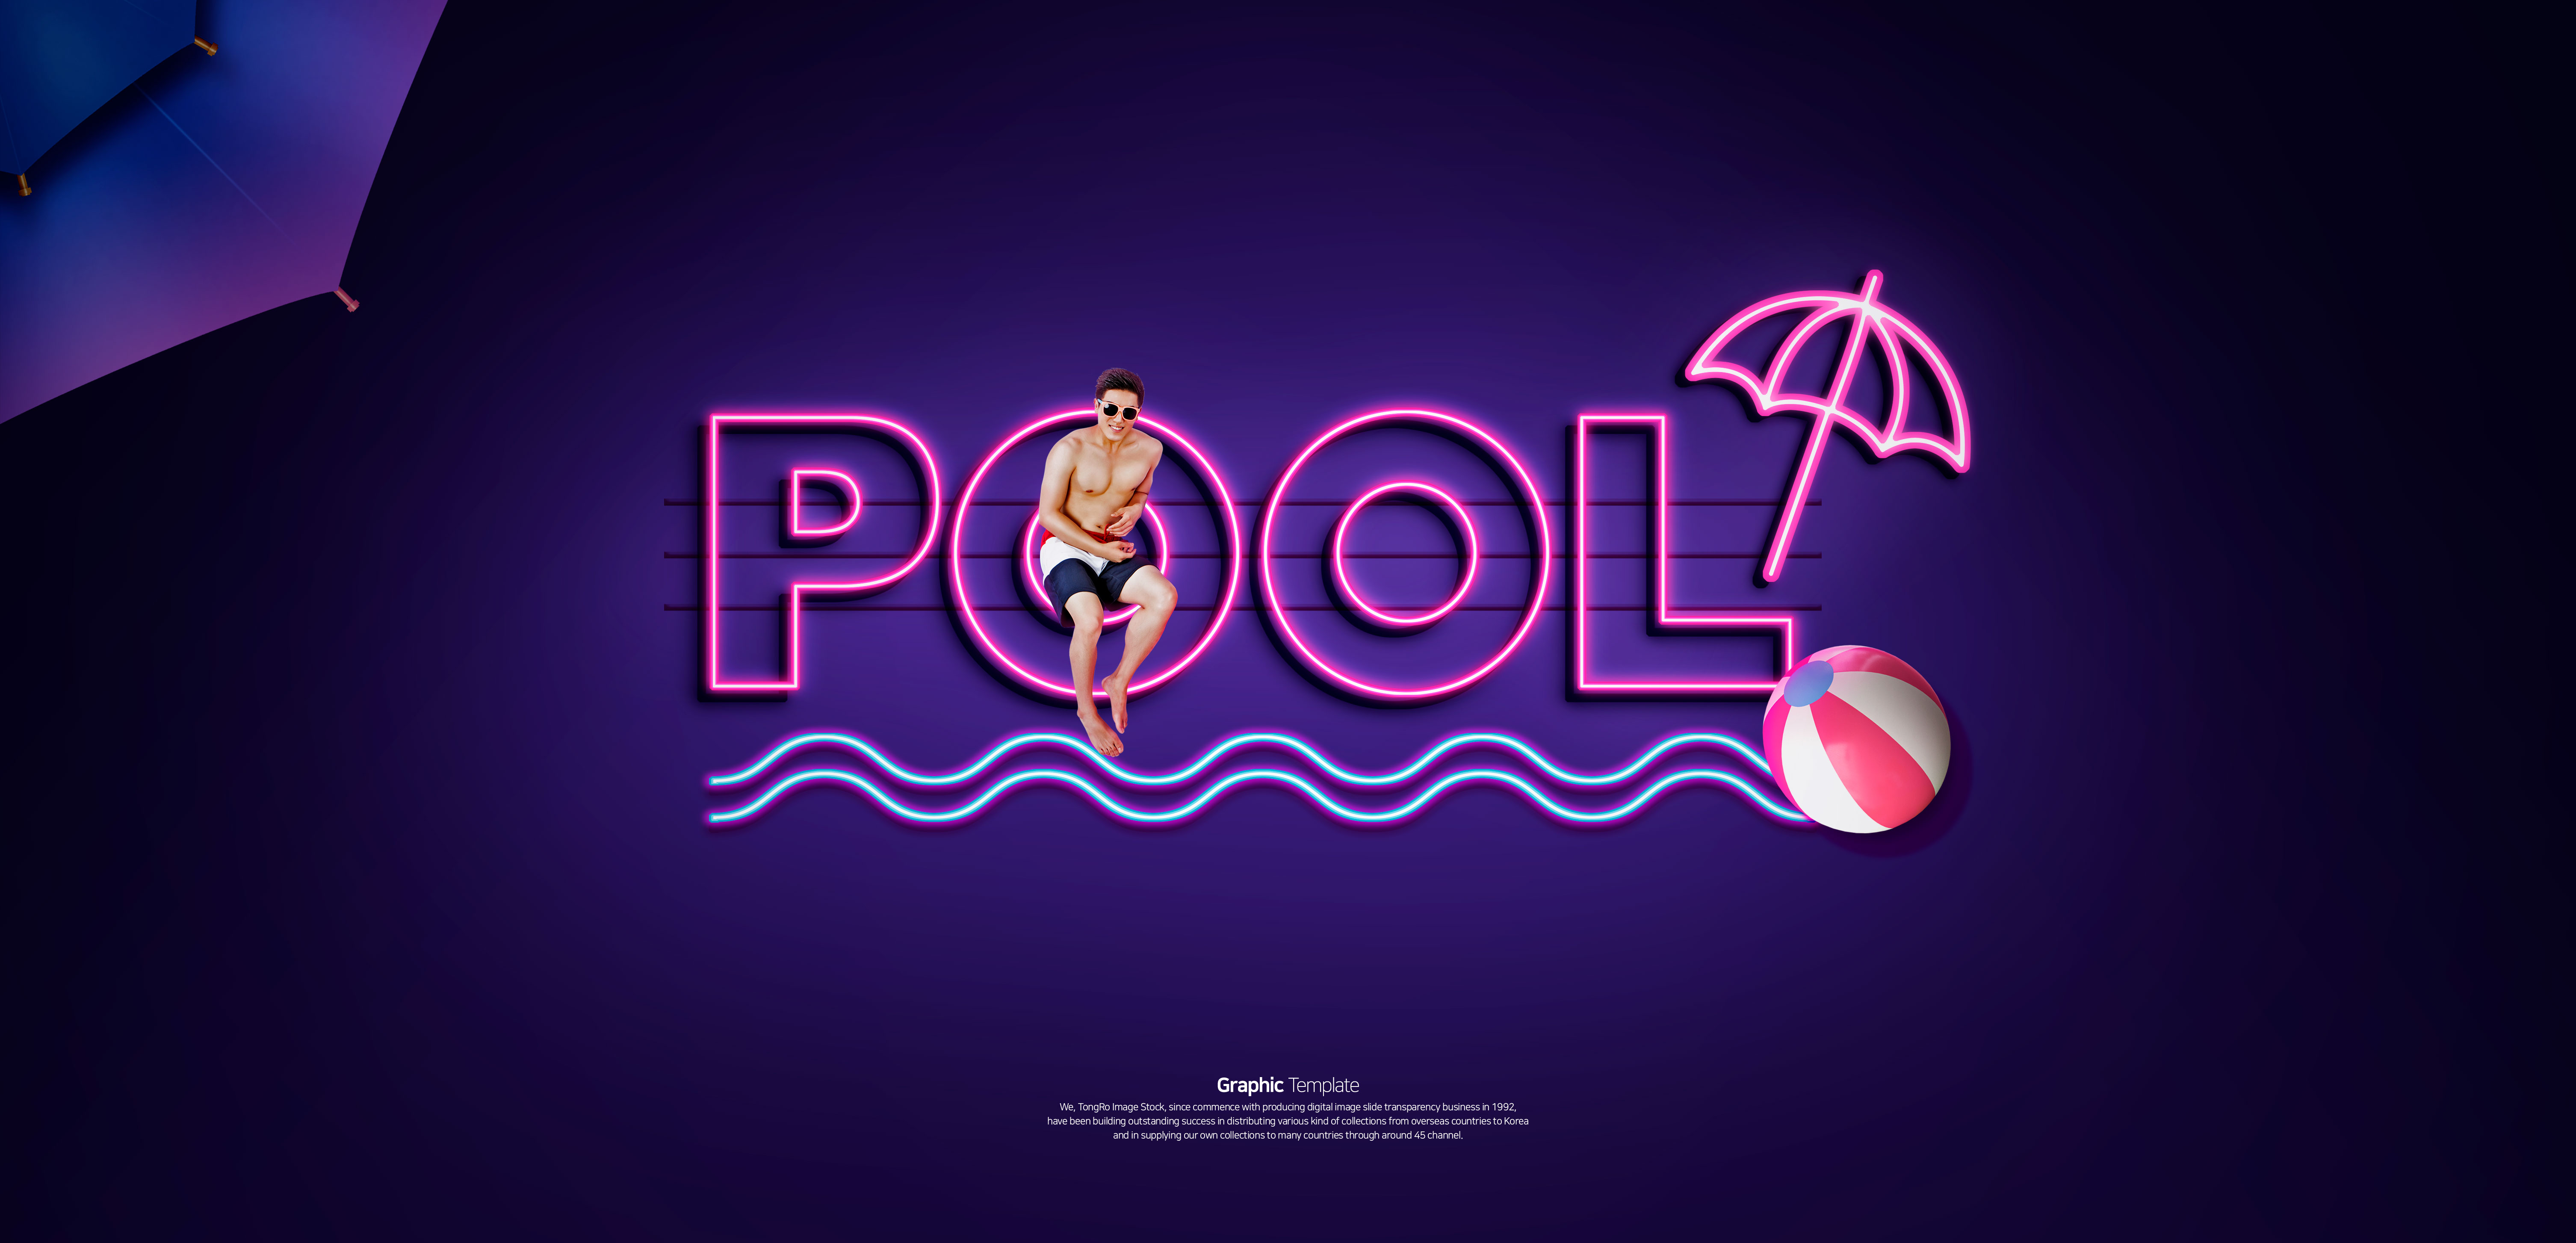 泳池派对聚会活动宣传霓虹灯Banner第一素材精选广告模板插图